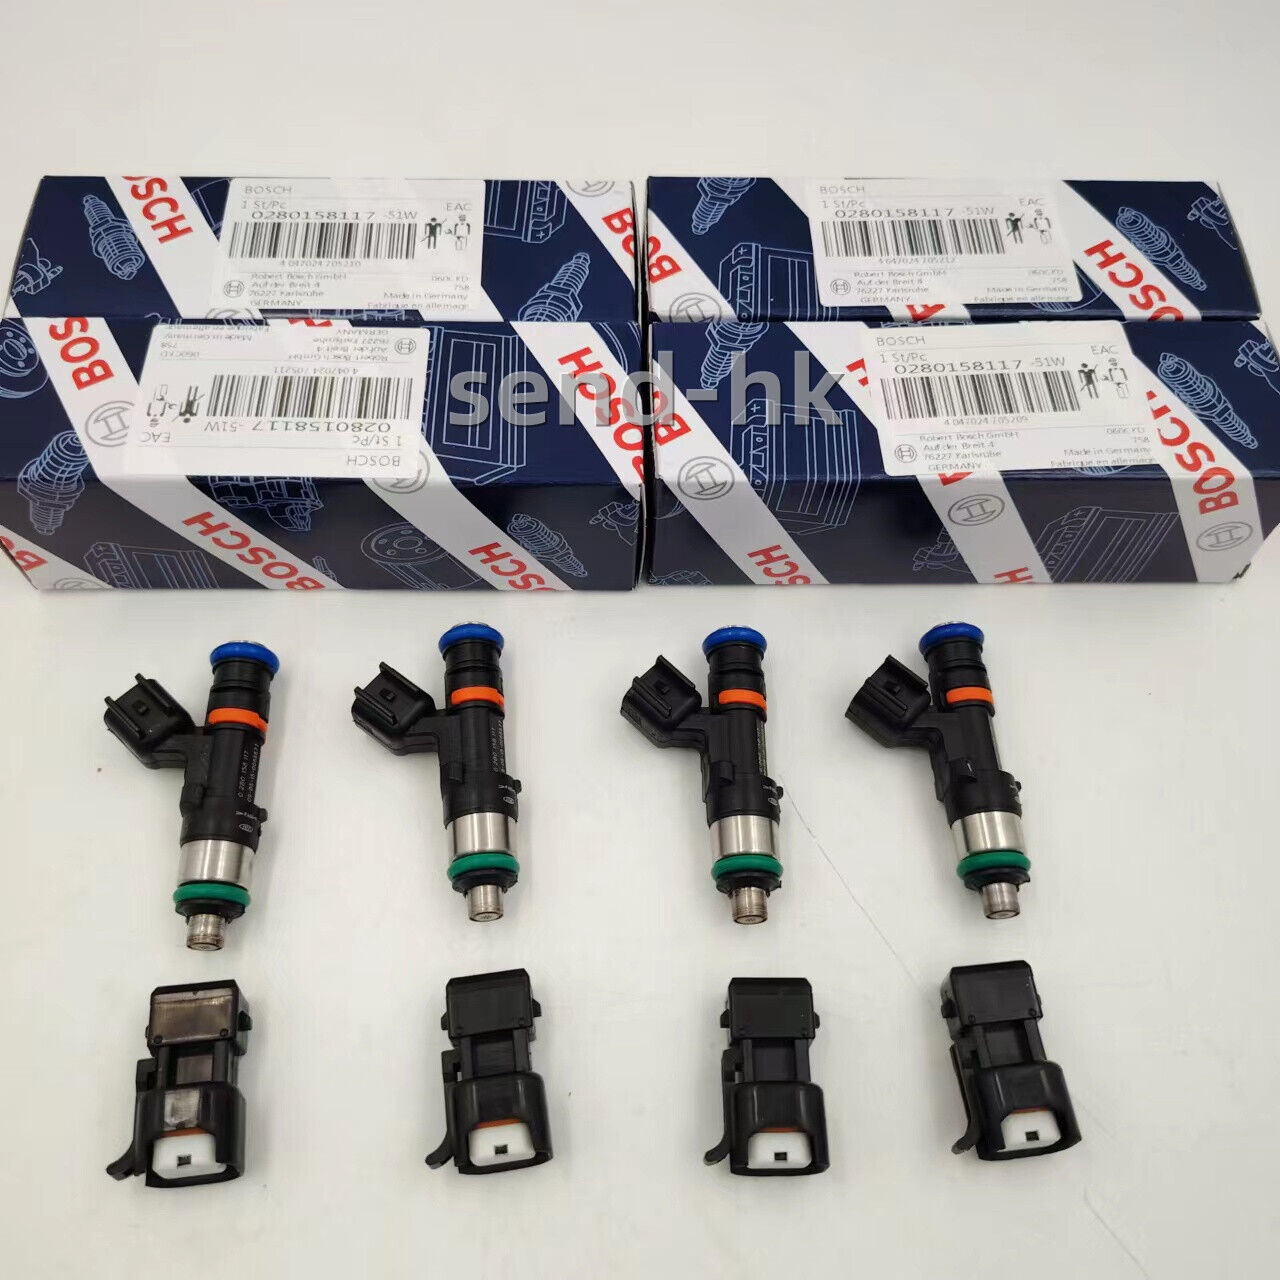 4x 0280158117 52lb 550cc Fuel Injectors Fits For EV14 Audi A4 Golf Jetta Passat